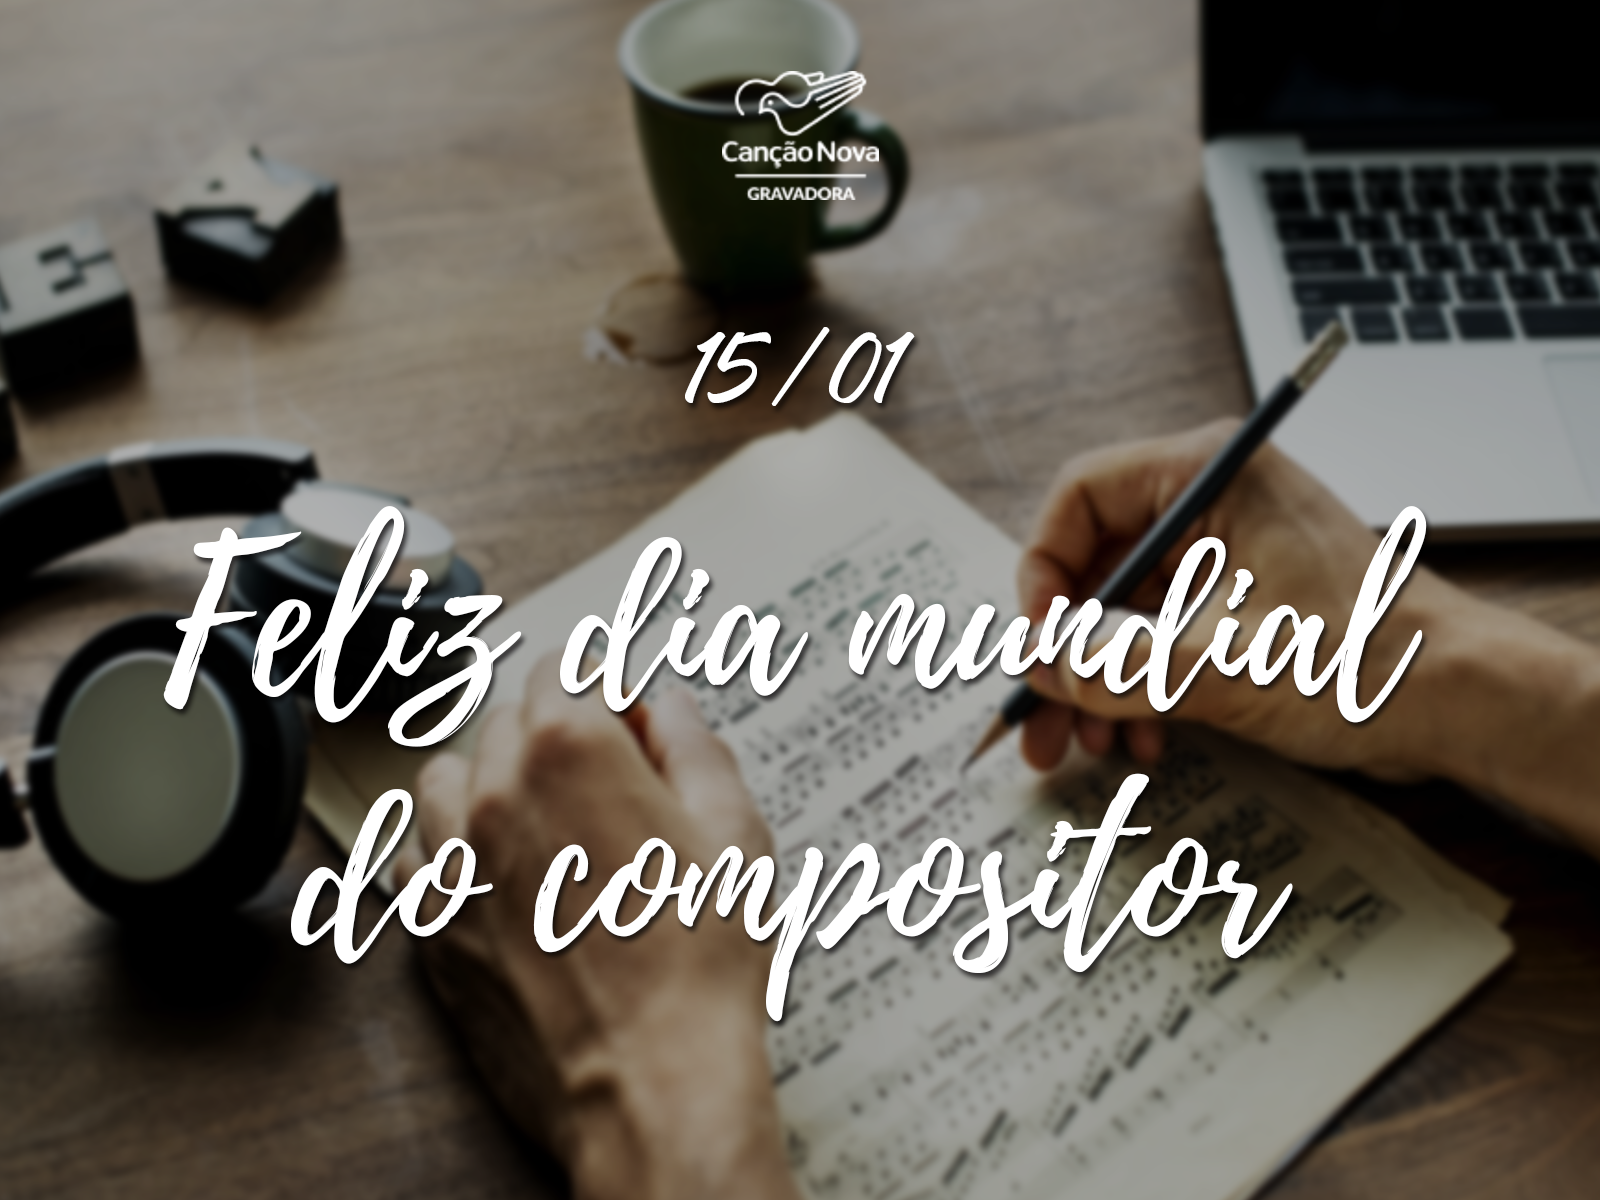 Dia Mundial do Compositor